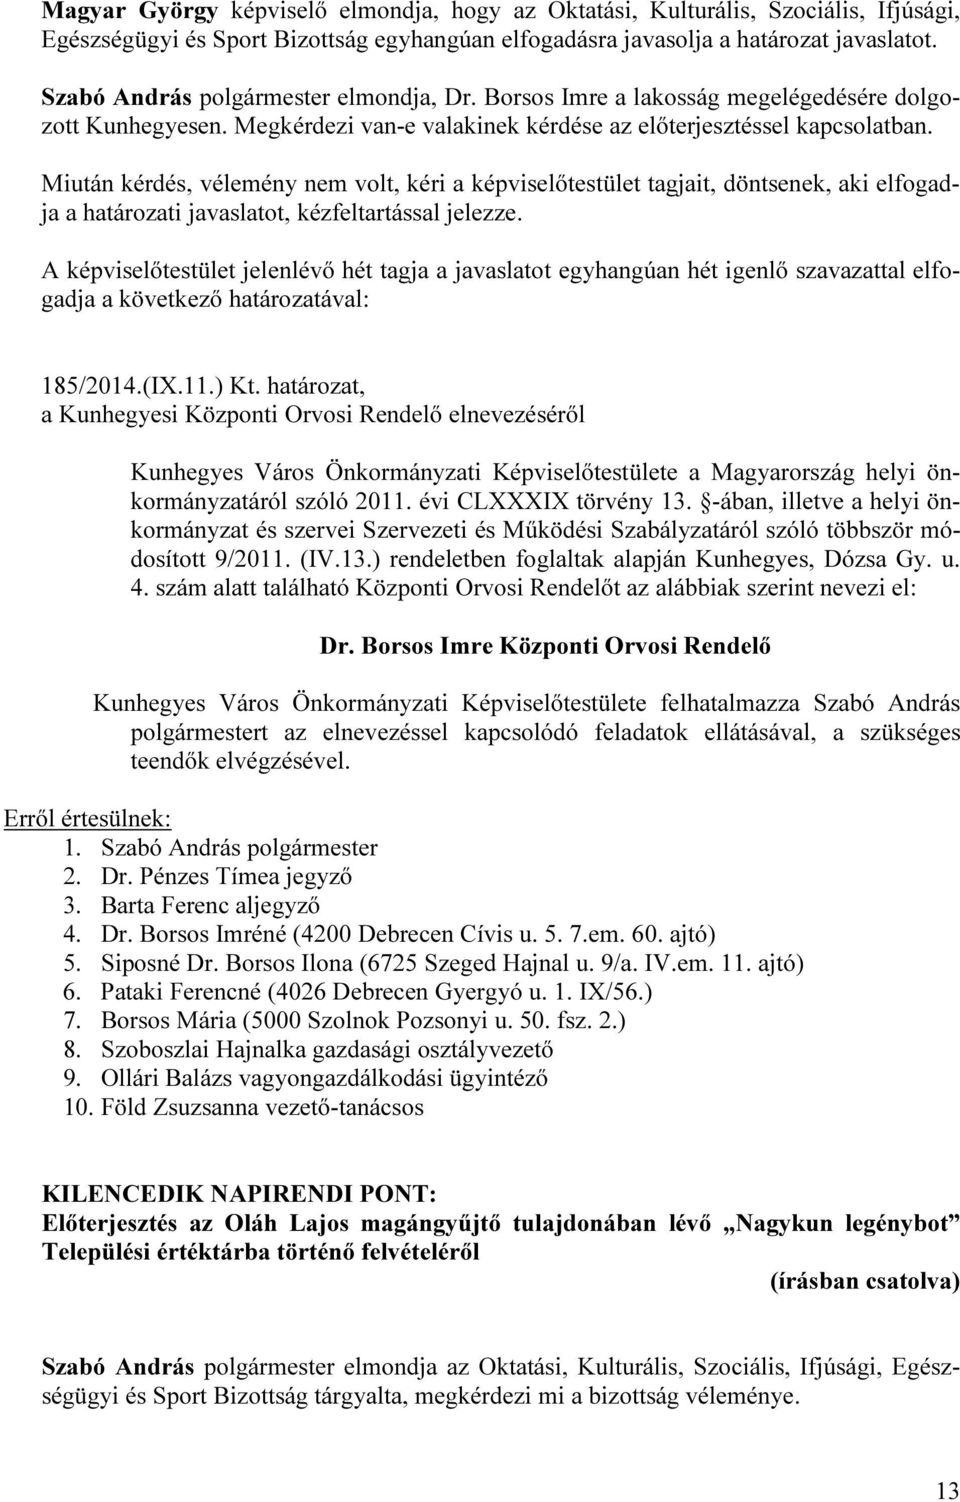 határozat, a Kunhegyesi Központi Orvosi Rendelő elnevezéséről Kunhegyes Város Önkormányzati Képviselőtestülete a Magyarország helyi önkormányzatáról szóló 2011. évi CLXXXIX törvény 13.